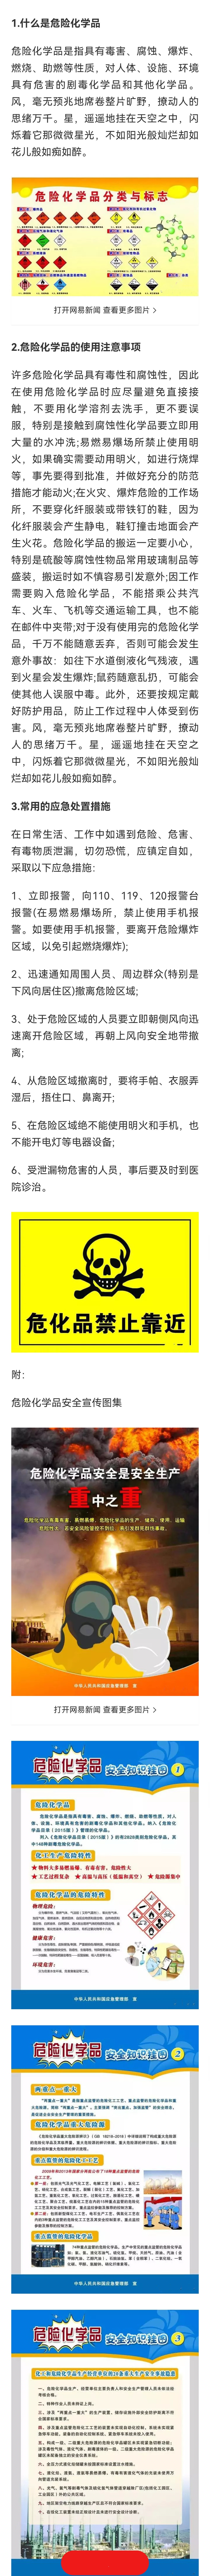 危险化学品安全知识宣传（五）——危险化学品安全宣传